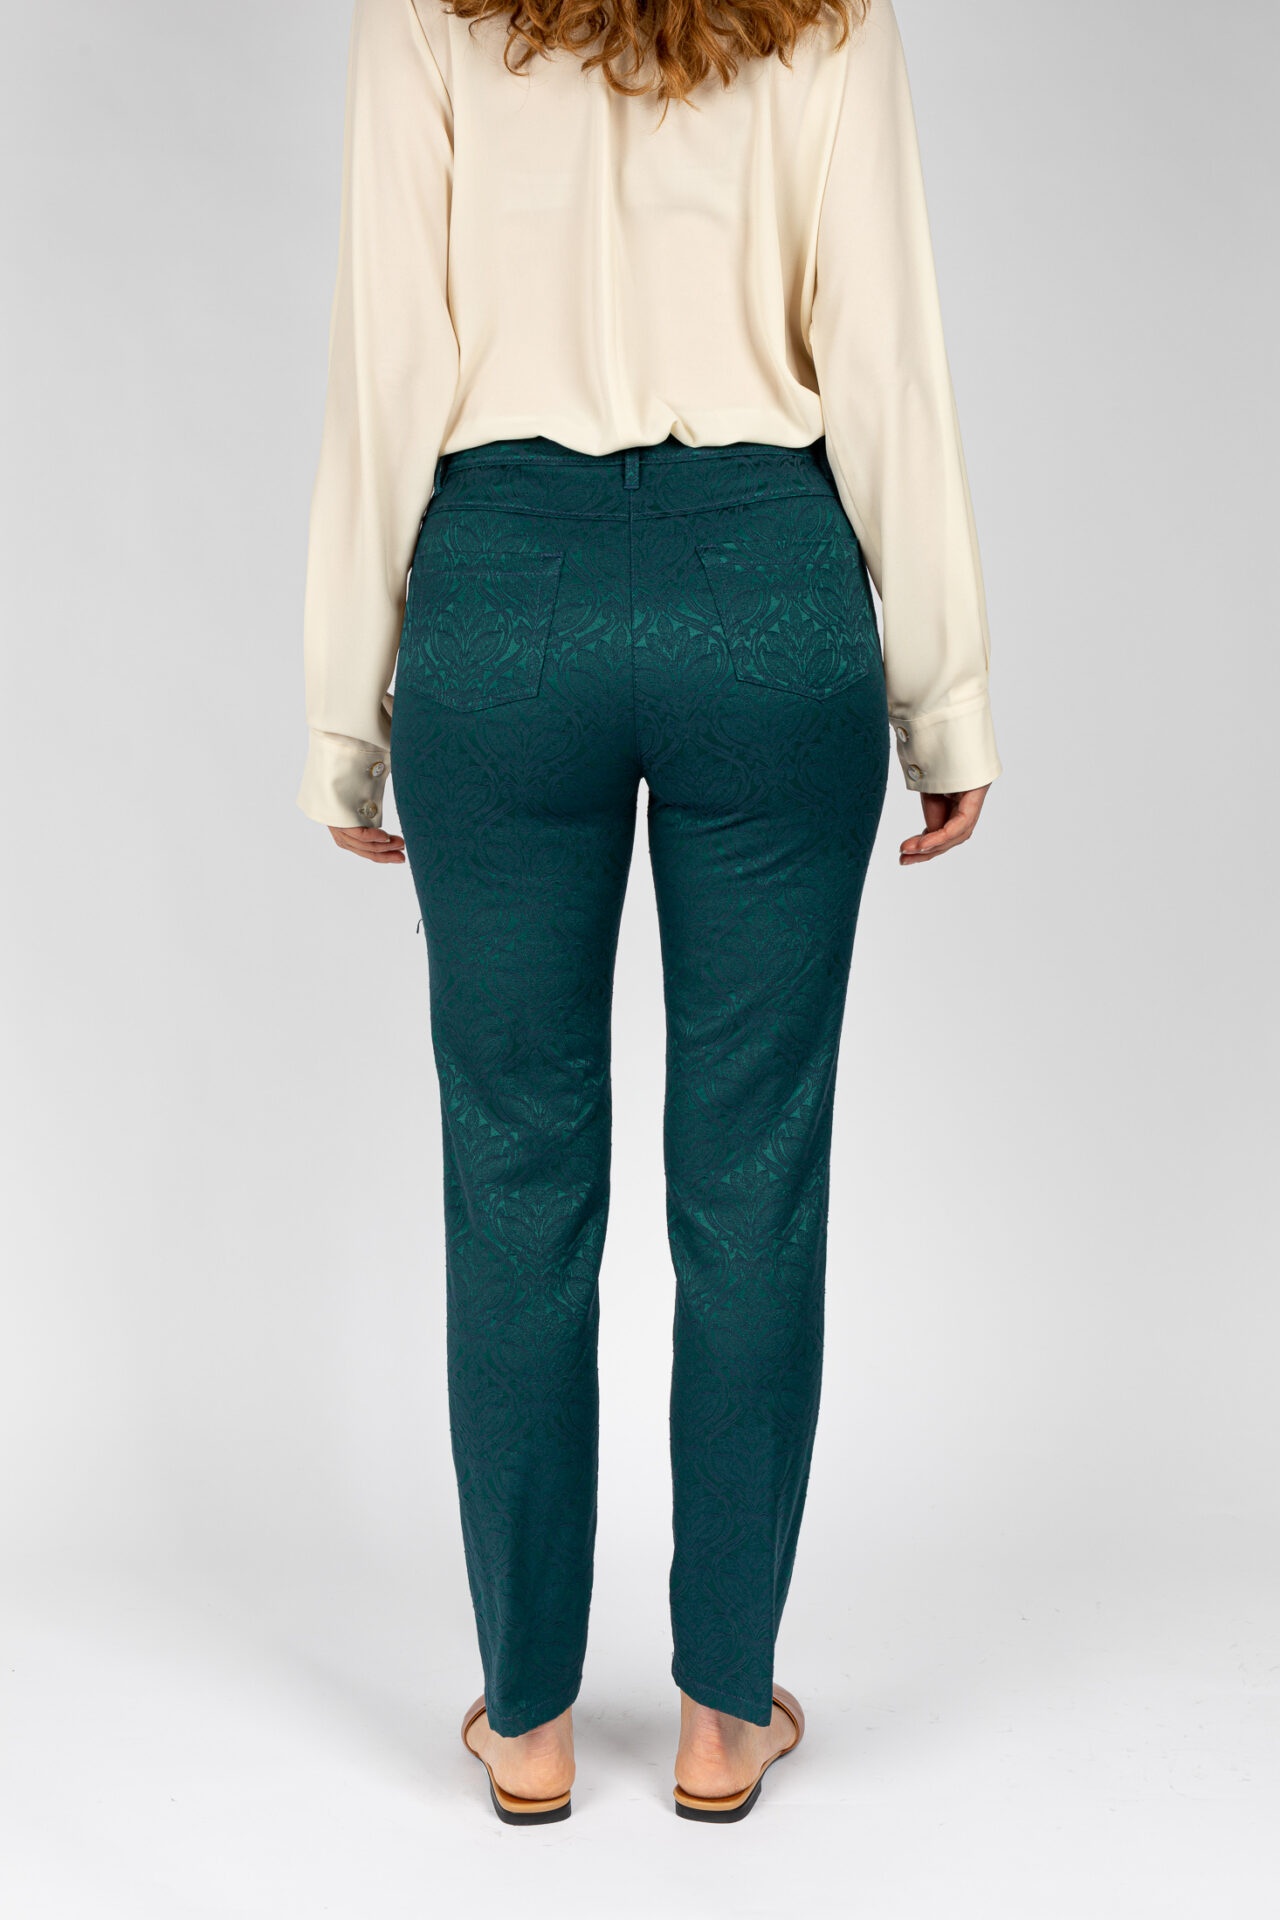 Pantaloni linea Jeans tessuto jacquard disegno fiore colore verde P19950GT - 4